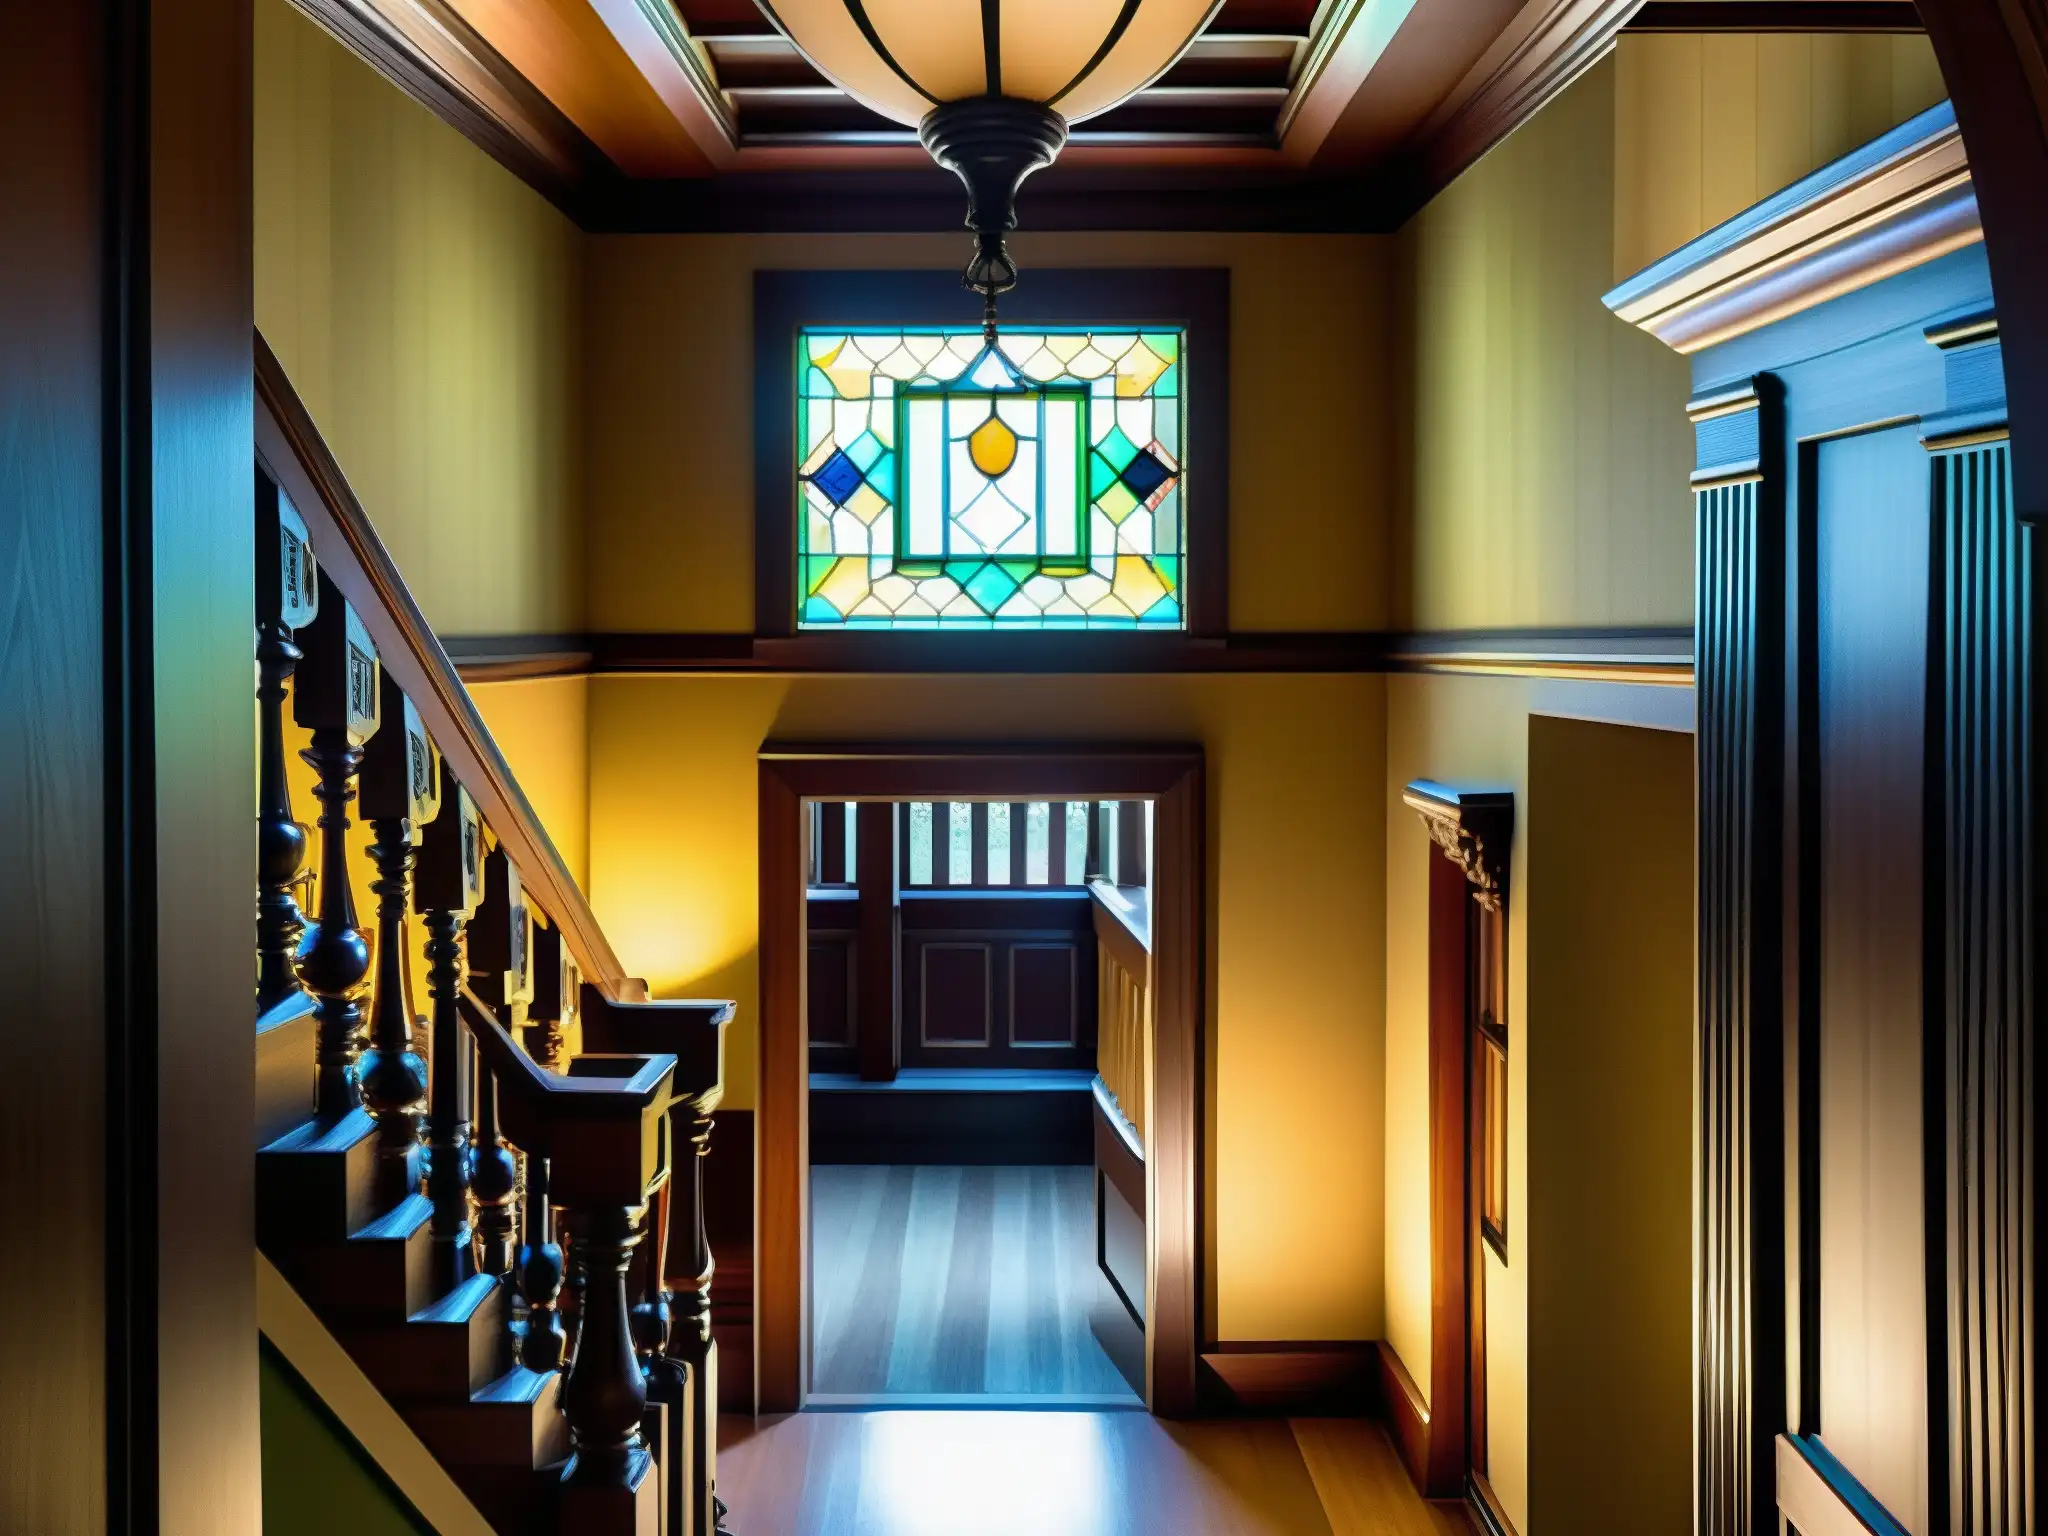 Explora la enigmática mansión Winchester, con su intrincada arquitectura victoriana, pasillos retorcidos y elementos de diseño enigmáticos